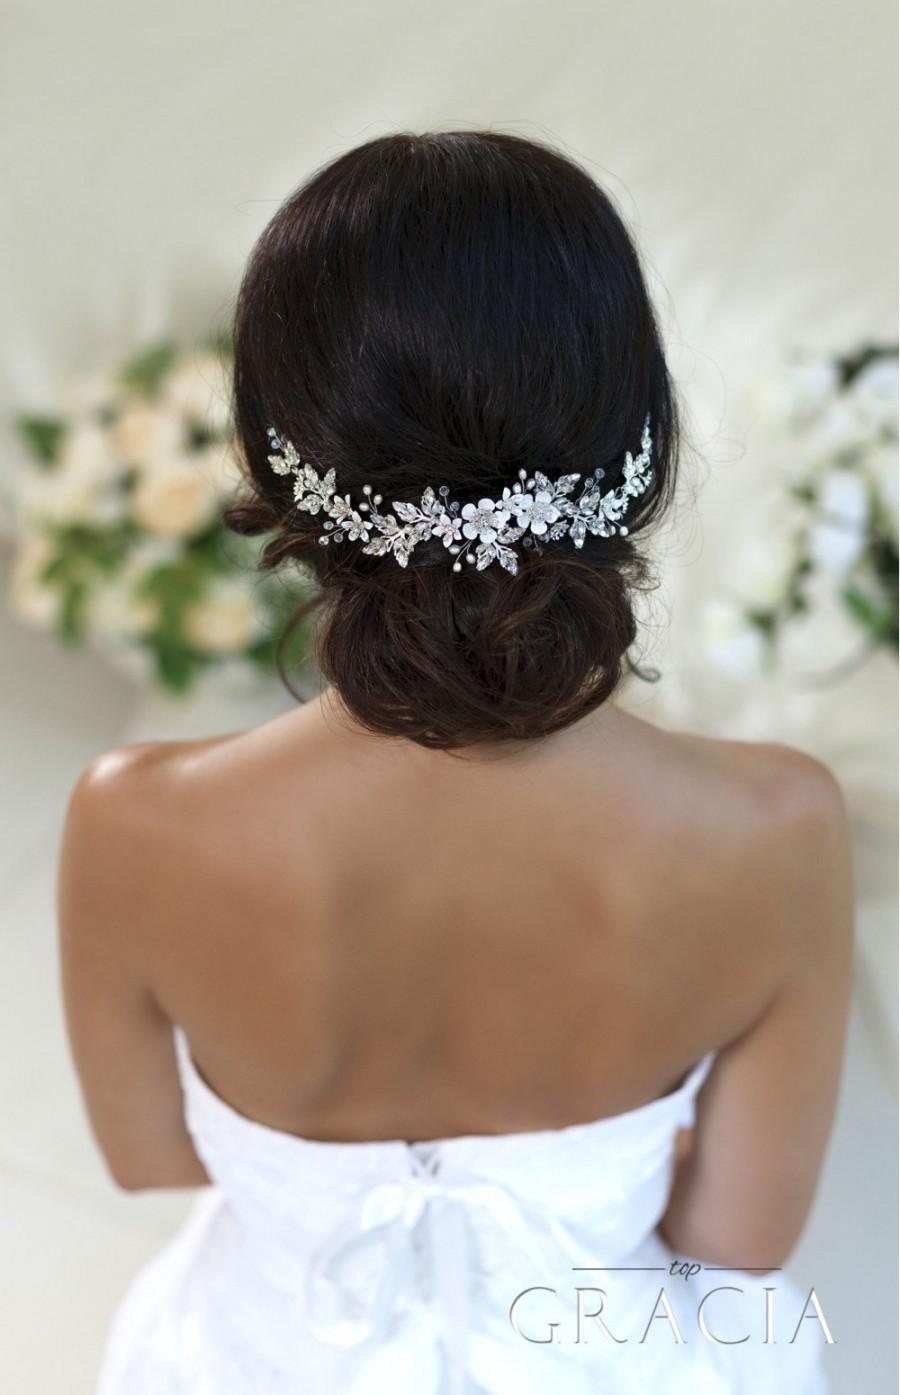 Hochzeit - Wedding hair accessories Bridal hair piece Wedding headband Crystal hairpiece Rhinestone headpiece Flower Bridal Headpiece With Crystals